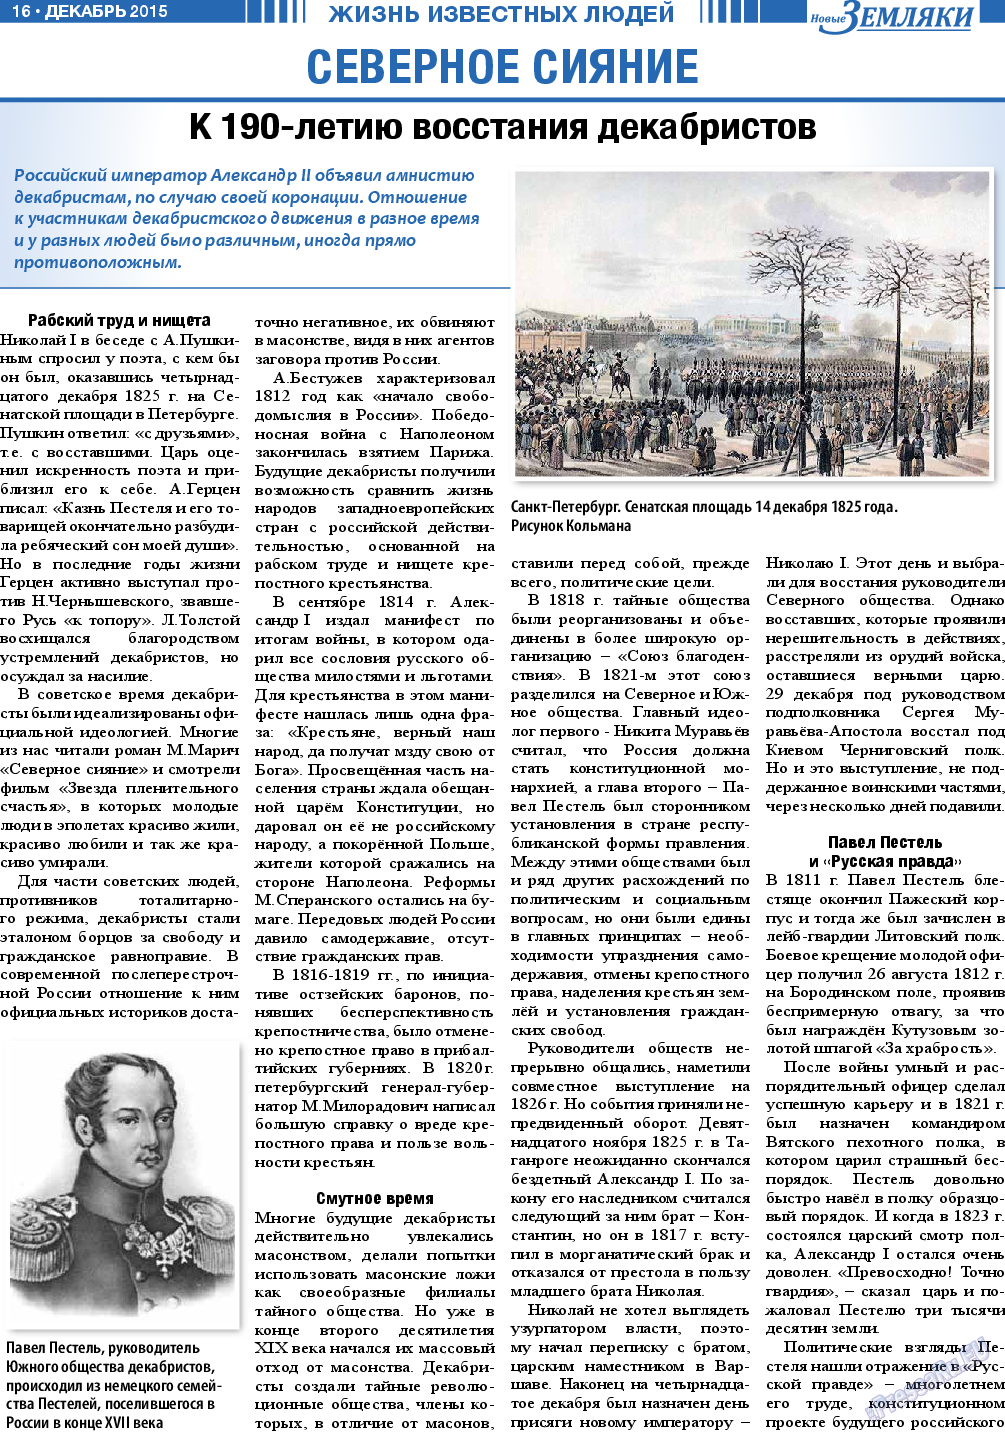 Новые Земляки, газета. 2015 №12 стр.16